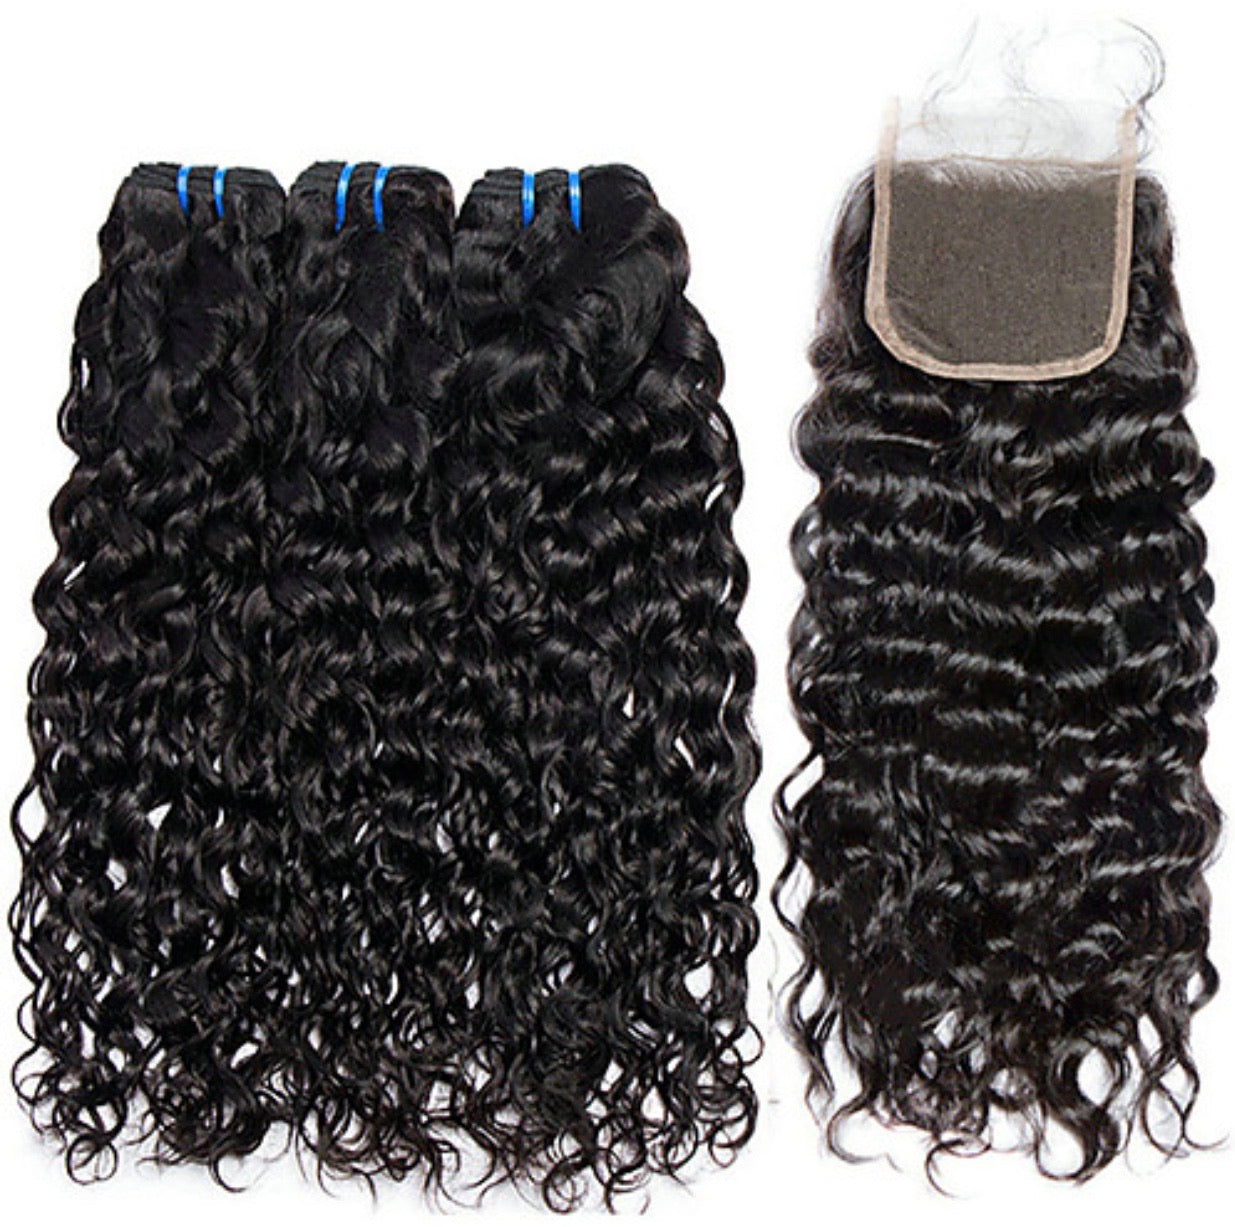 Water Wave Curly Human Hair Bundle Package